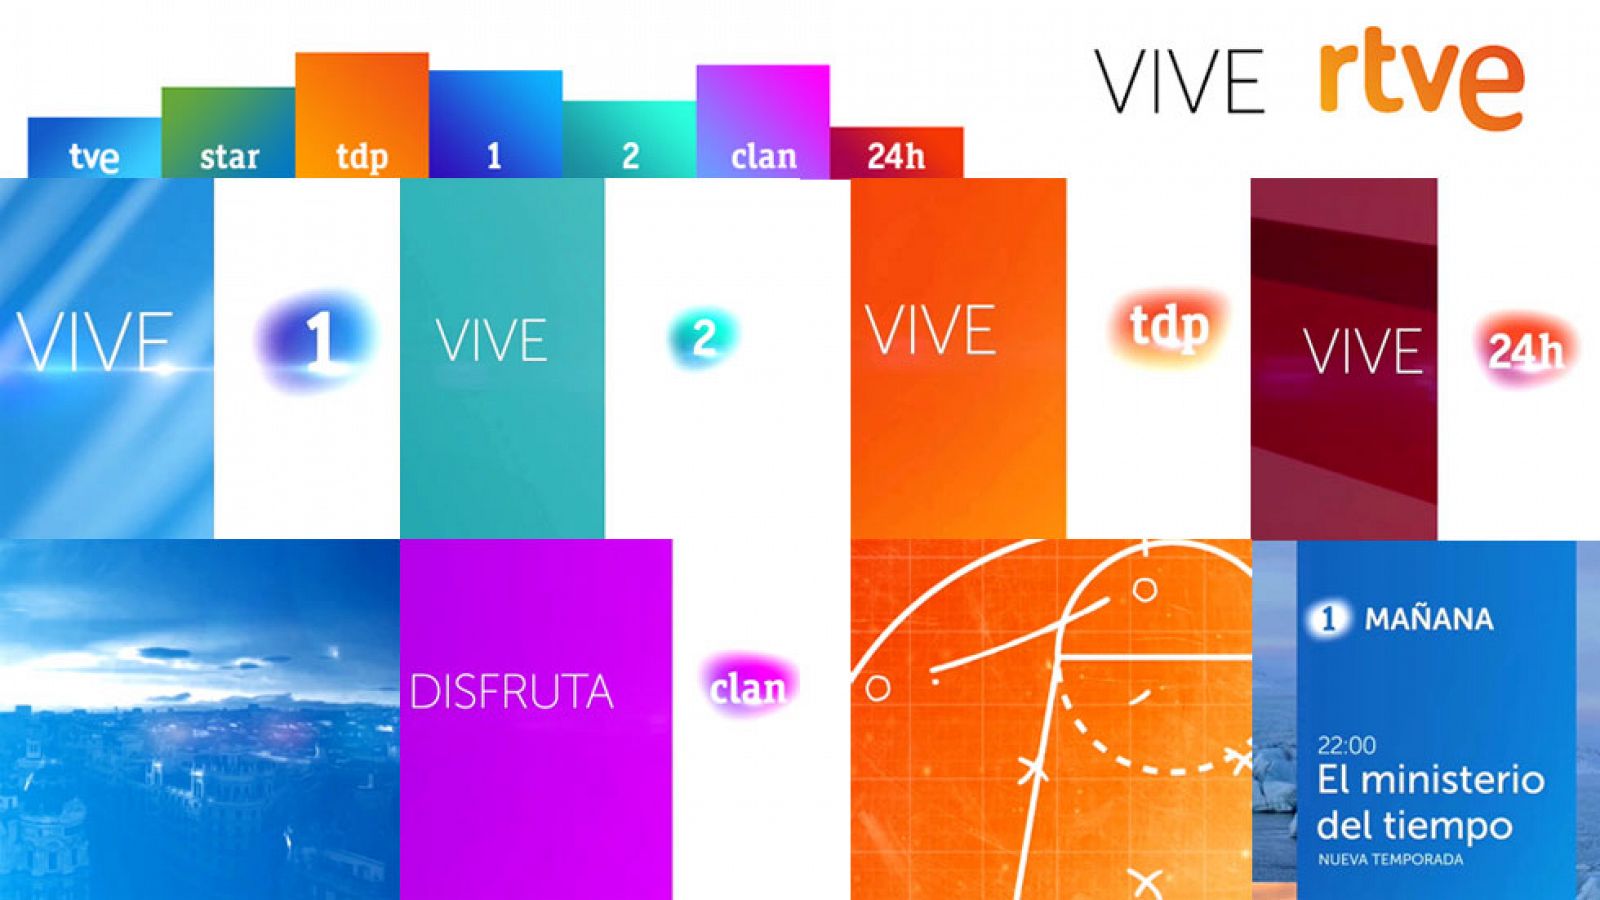 La nueva imagen de los canales de TVE quiere potenciar la imagen de grupo de RTVE, el mayor grupo audiovisual de Espaa, y acercarse al espectador y facilitar su navegabilidad por todos los contenidos, de modo que pueda tener una visin clara de todo